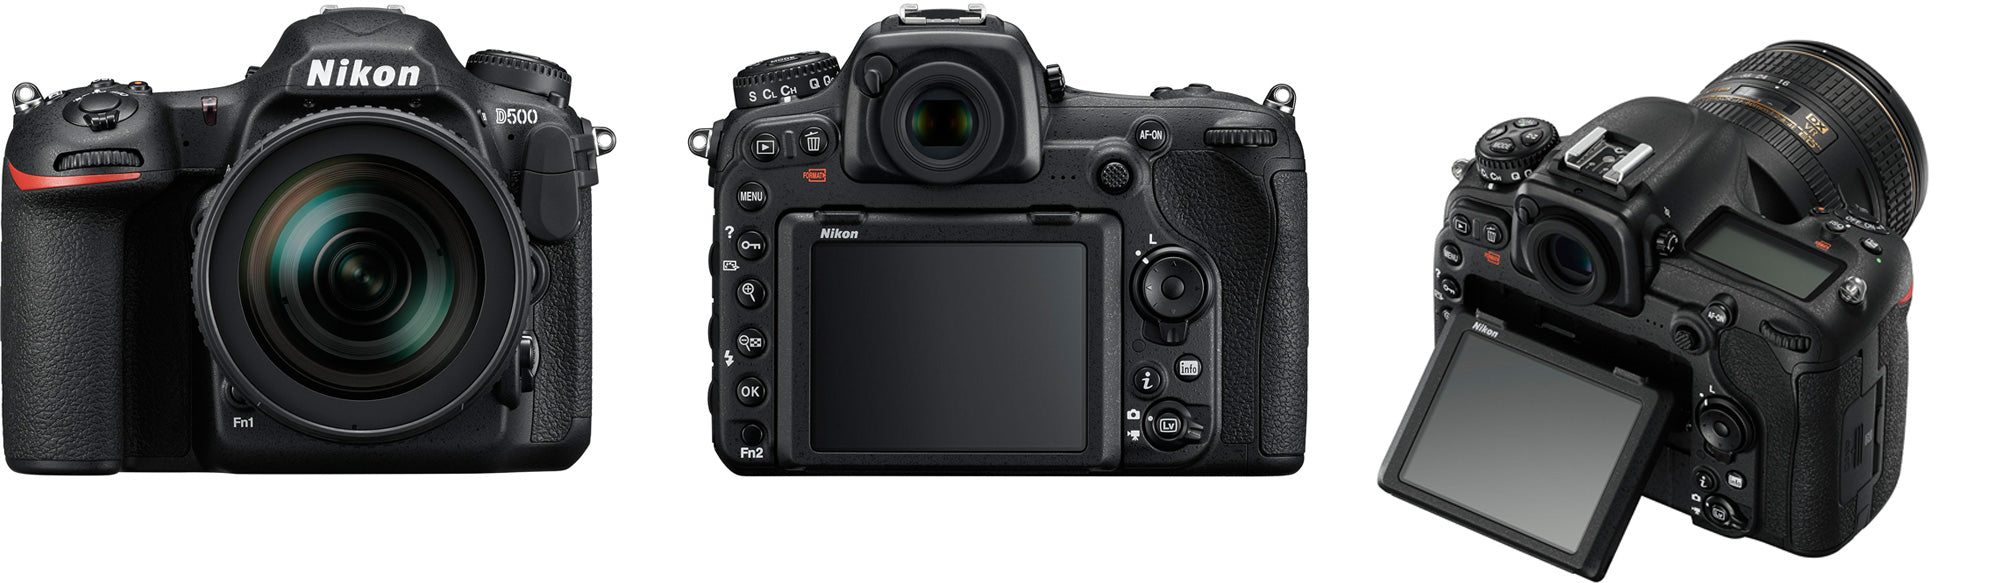 Nikon D500 DSLR Camera with 16-80mm Lens Basic Kit